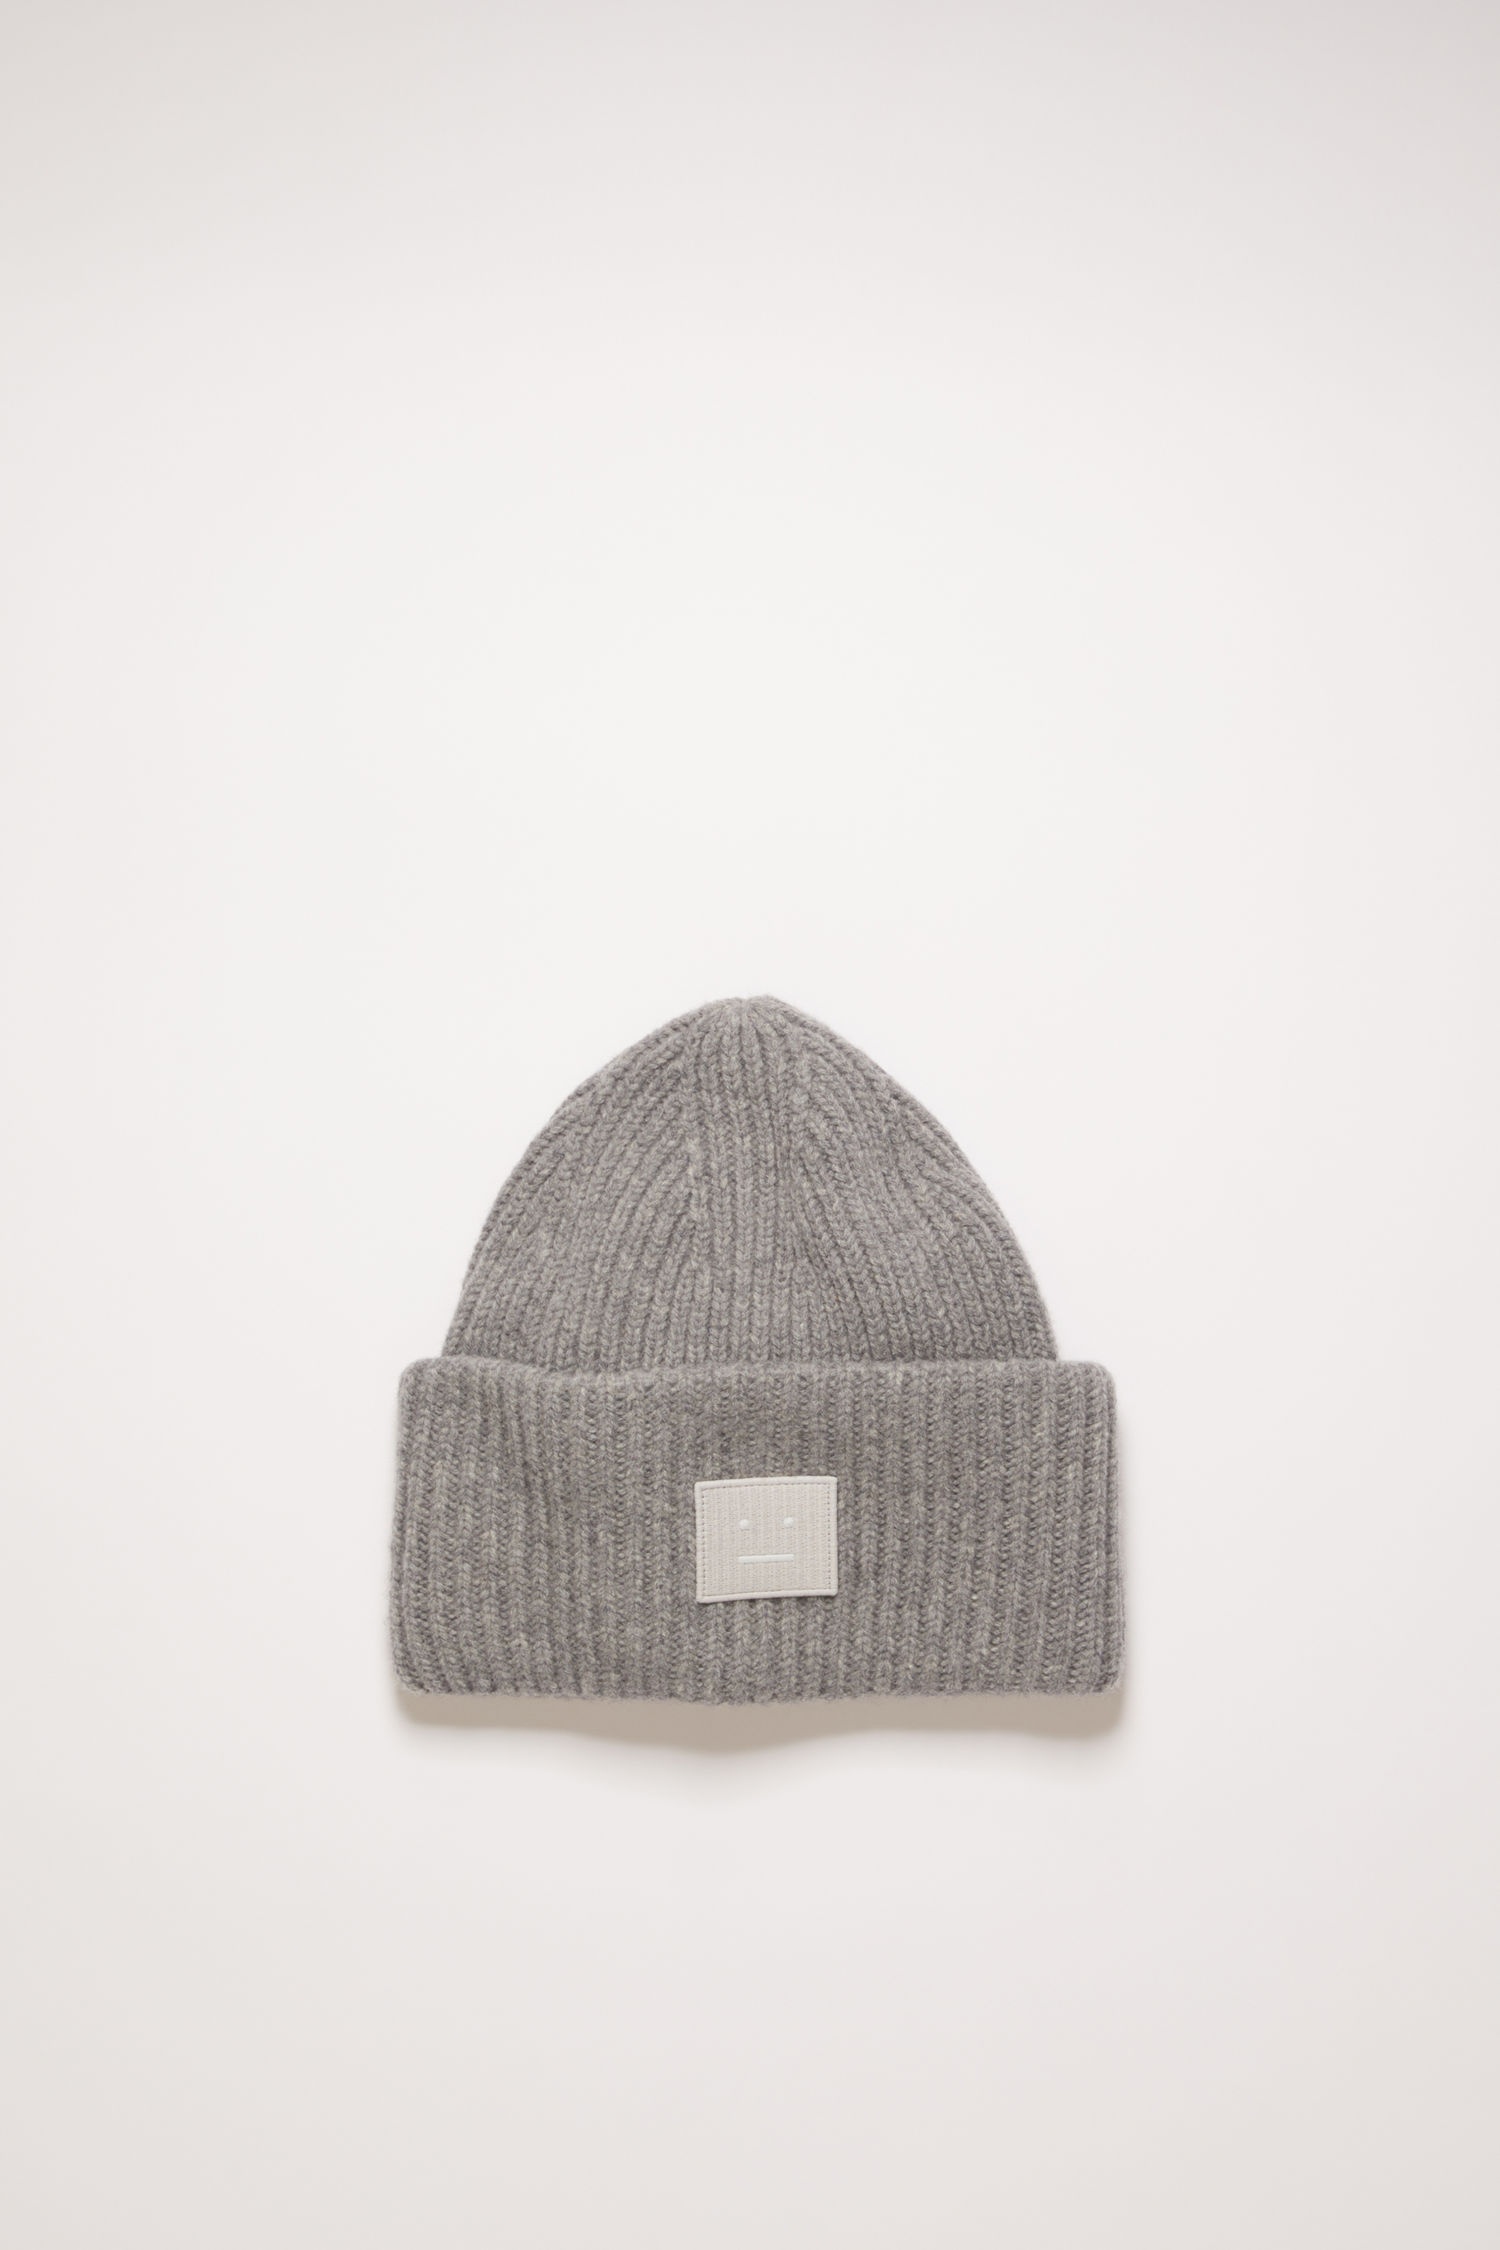 Rib knit beanie hat grey melange - 1